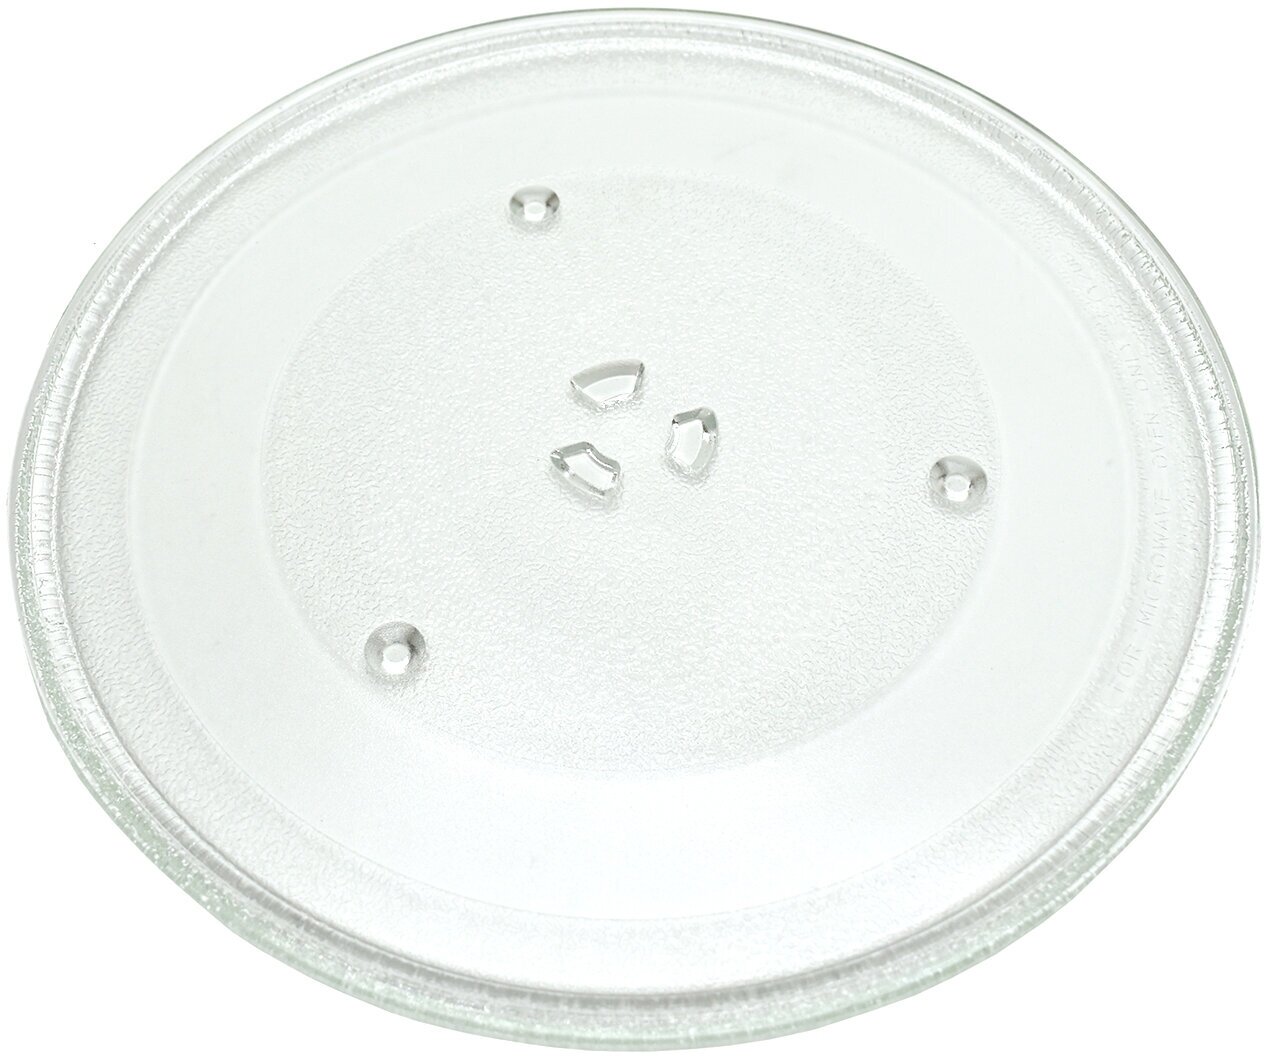 Тарелка для СВЧ микроволновой печи Samsung, диаметр 345мм, DE74-20016A